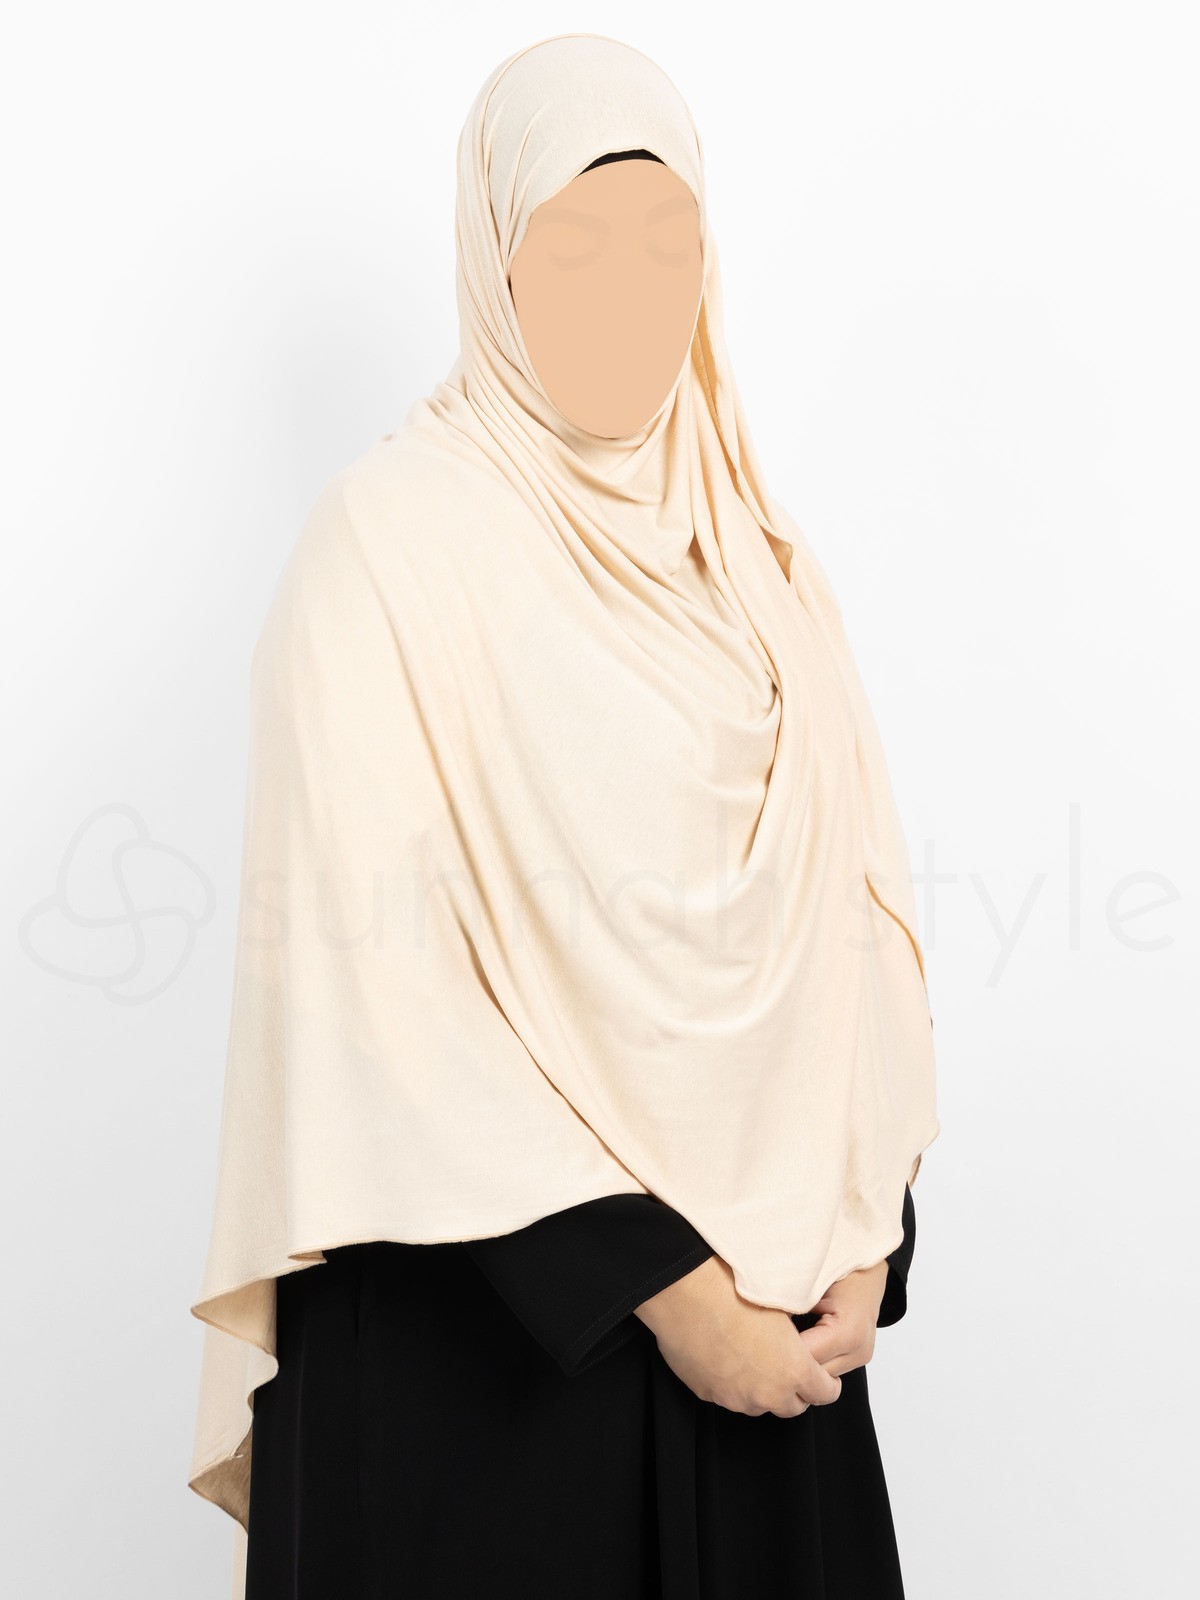 Sunnah Style - Urban Shayla (Soft Jersey) - XL (Wheat)